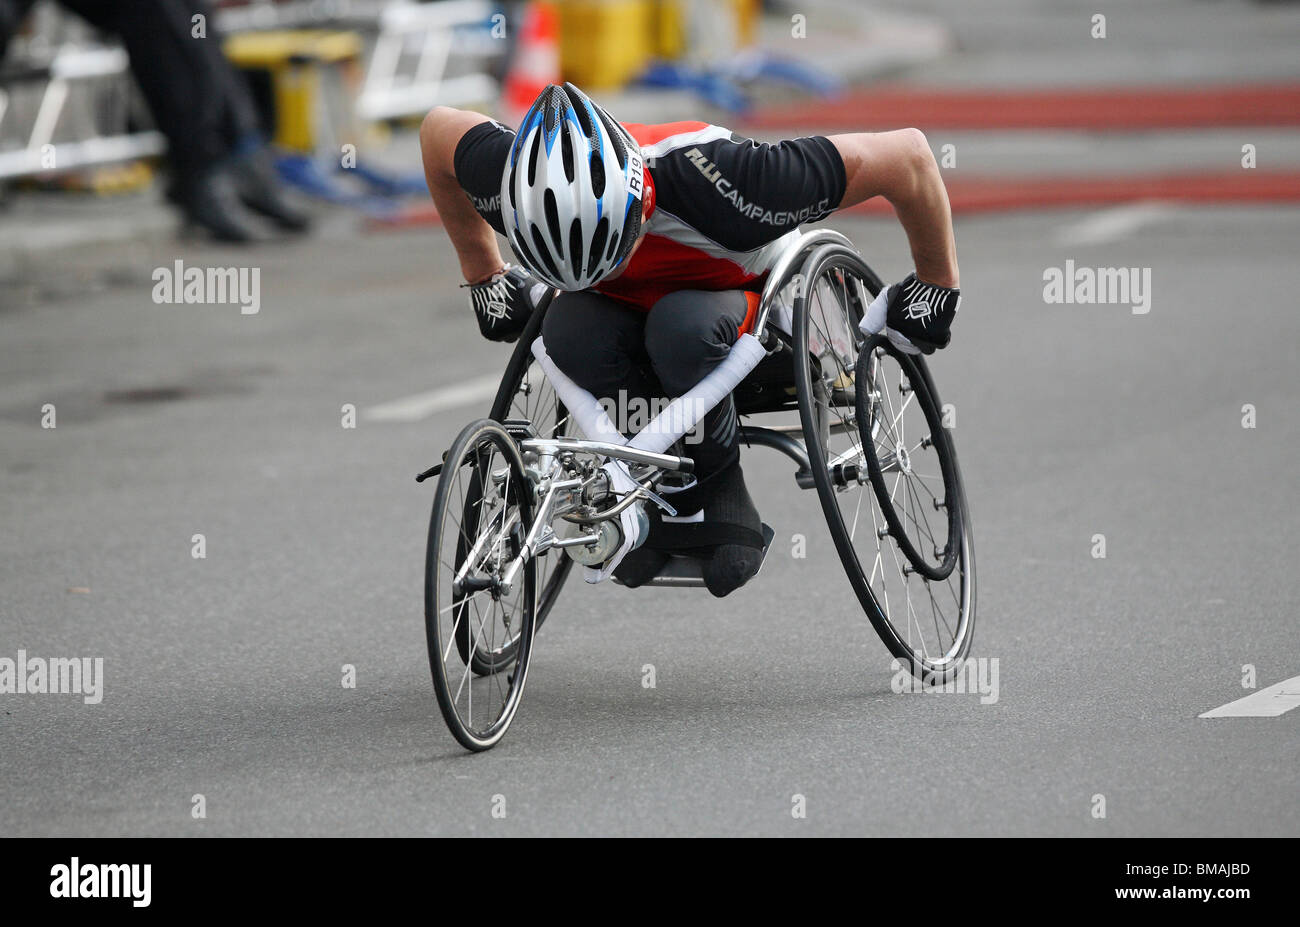 Un homme sur un fauteuil roulant en prenant part à un marathon, Berlin, Allemagne Banque D'Images